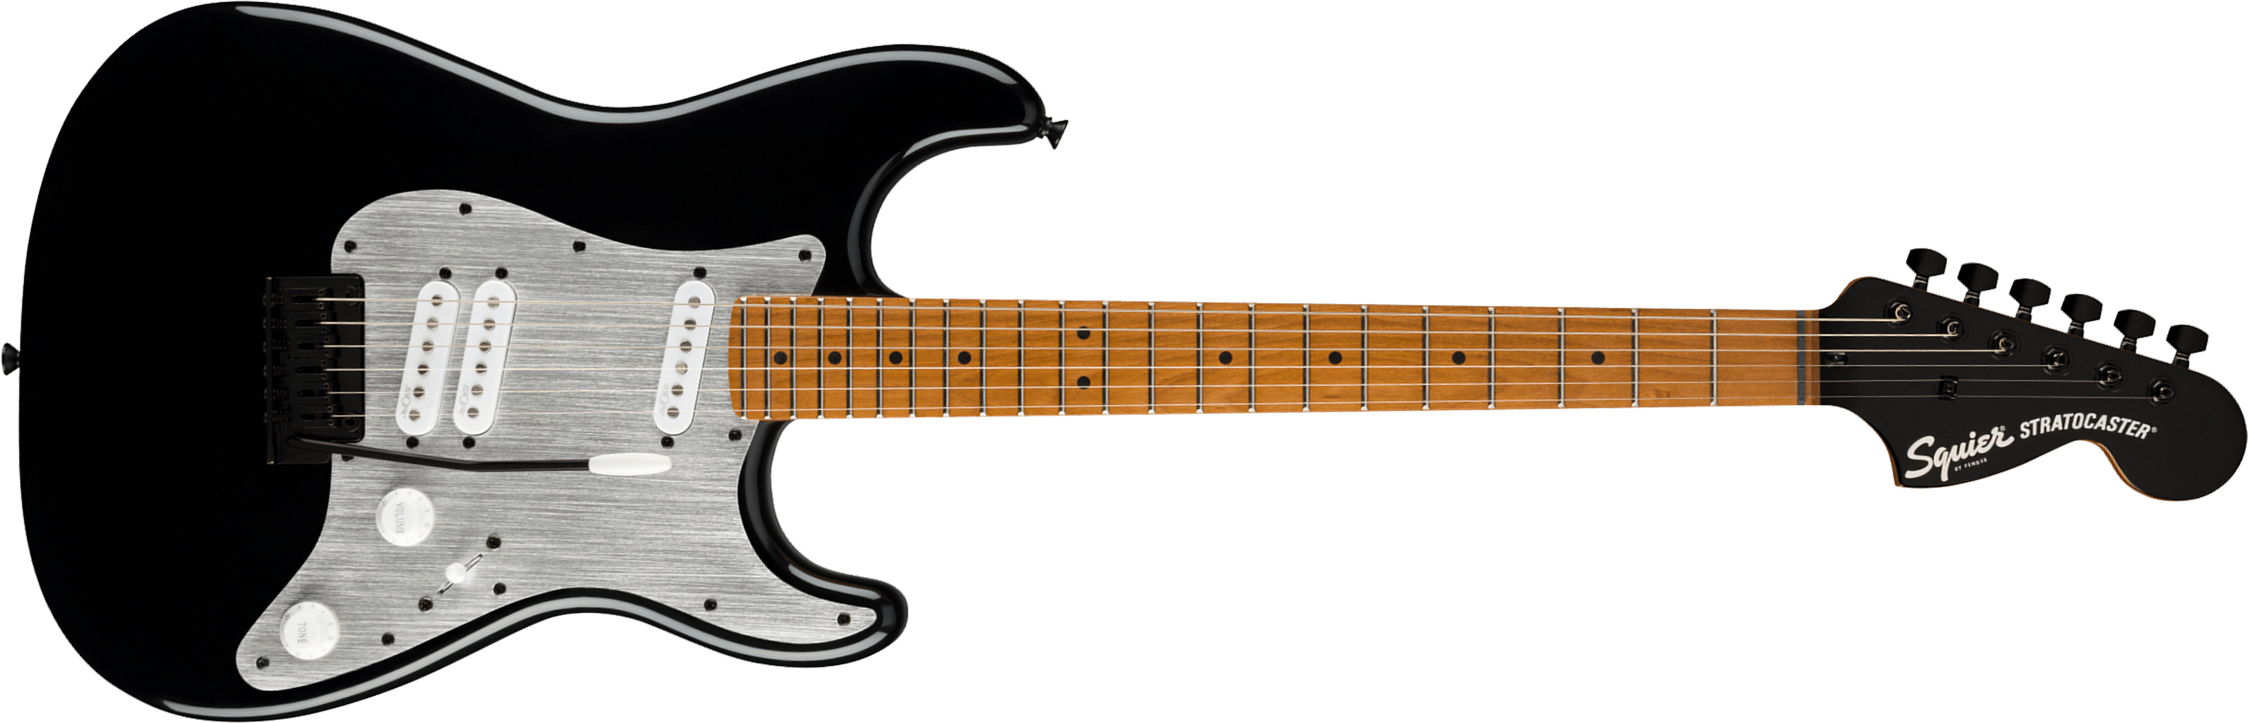 Squier Strat Contemporary Special Sss Trem Mn - Black - Elektrische gitaar in Str-vorm - Main picture